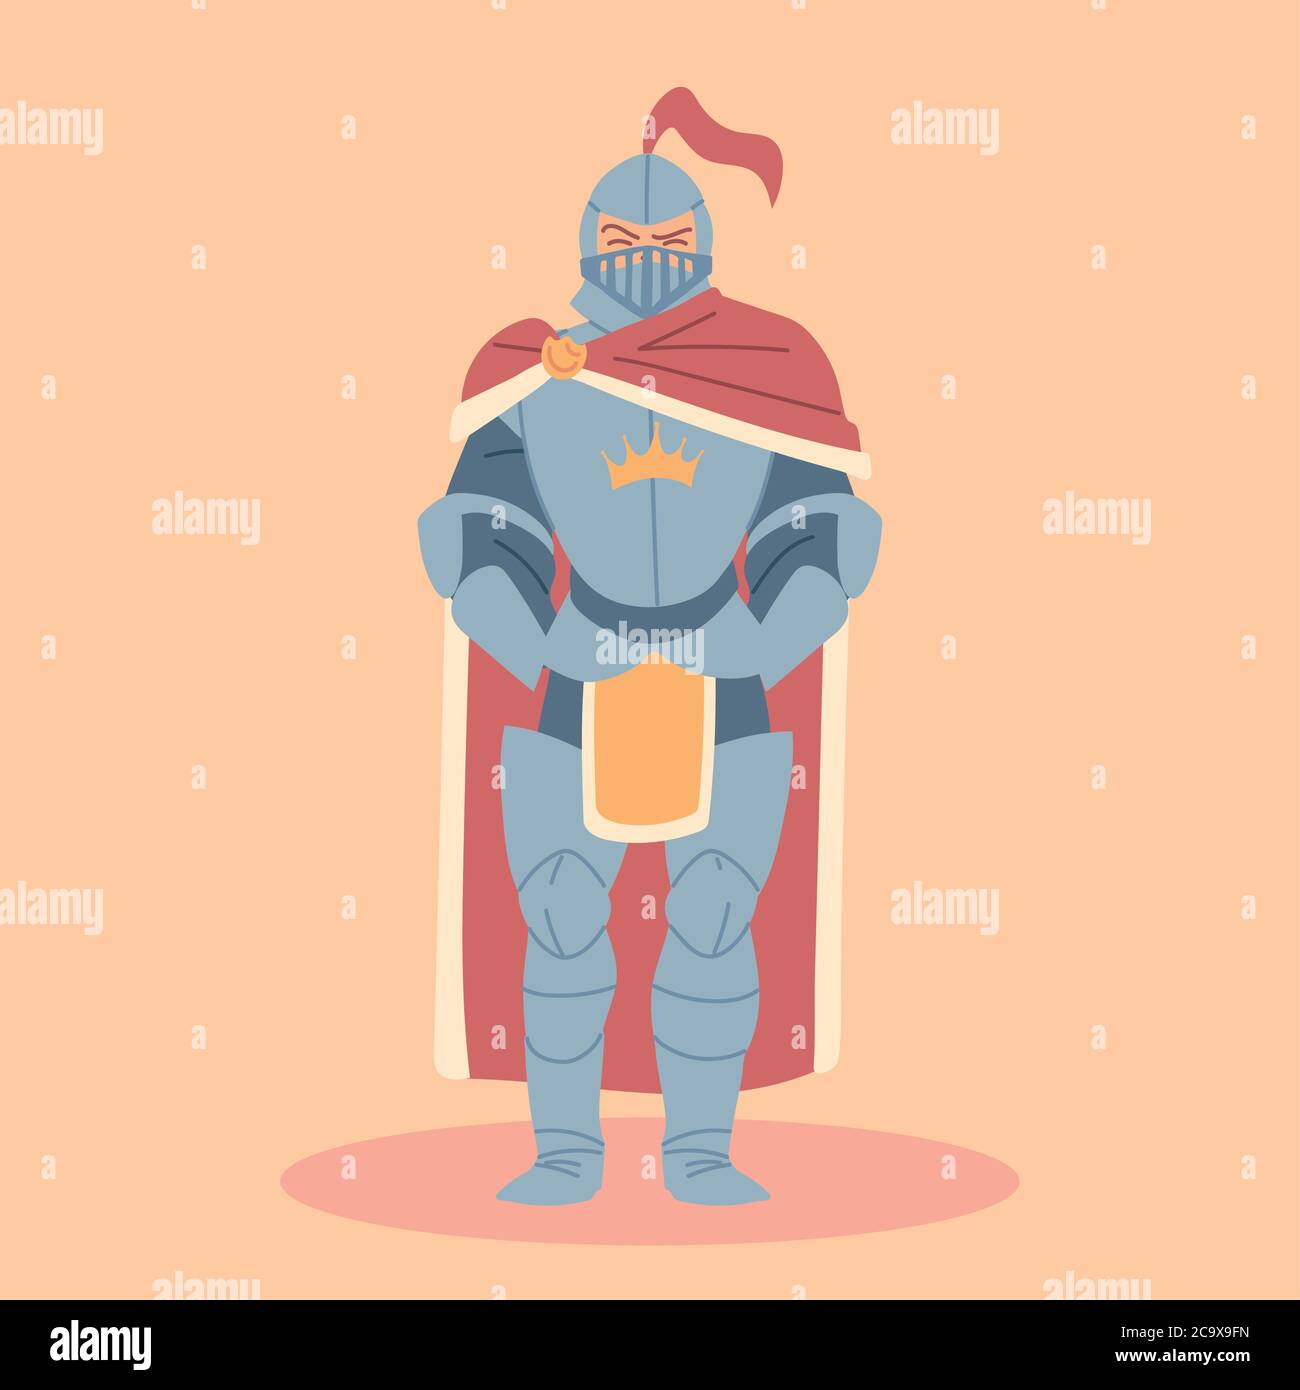 medieval knight in armor, knight costume vector illustration design Stock Vector